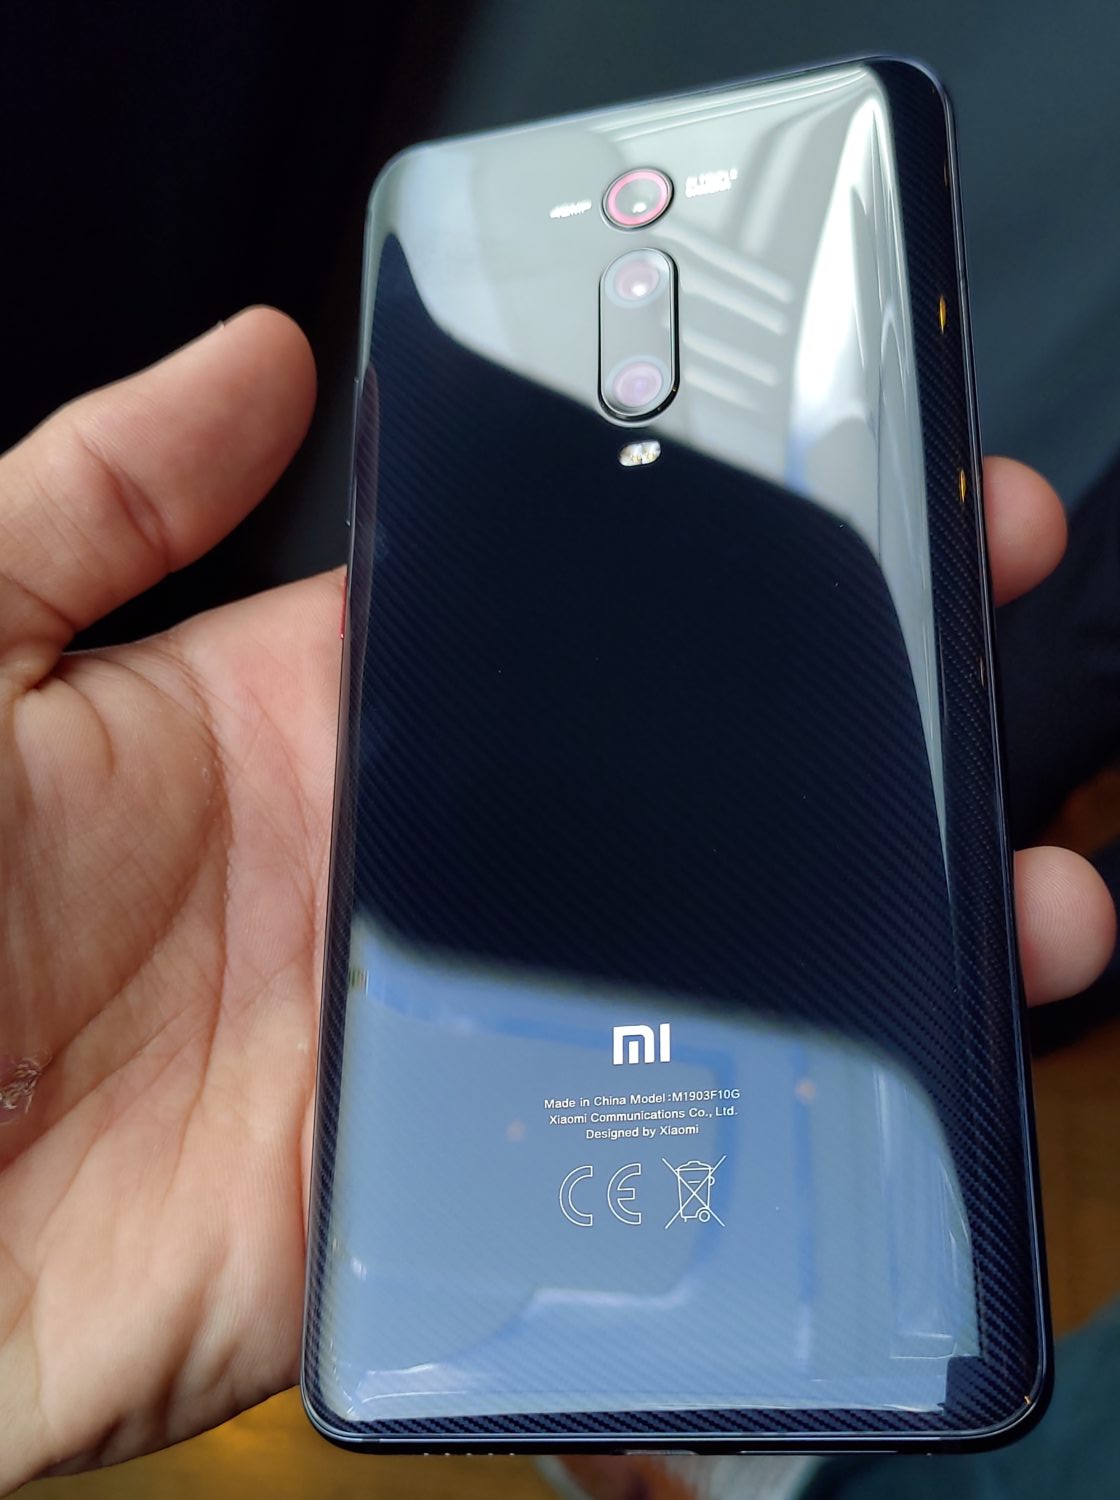 Xiaomi Mi 9T : Des caractéristiques incroyables pour 349€ Mi smart band 4